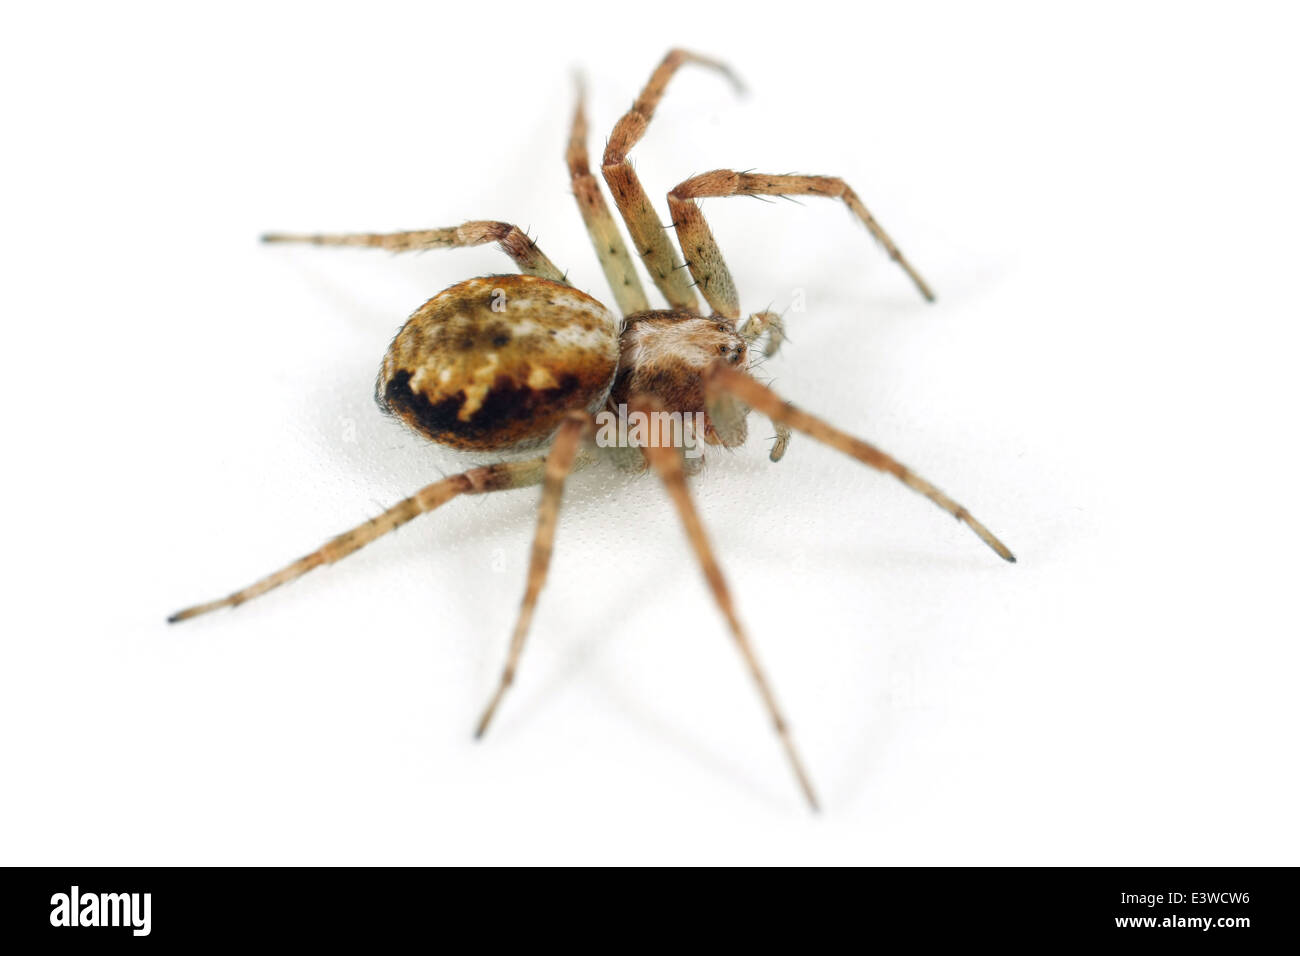 Weibliche Rasen laufen-Spider (Philodromus Cespitum), Teil der Familie Philodromidae - Running Krabben Spinnen. Isoliert auf weiss. Stockfoto